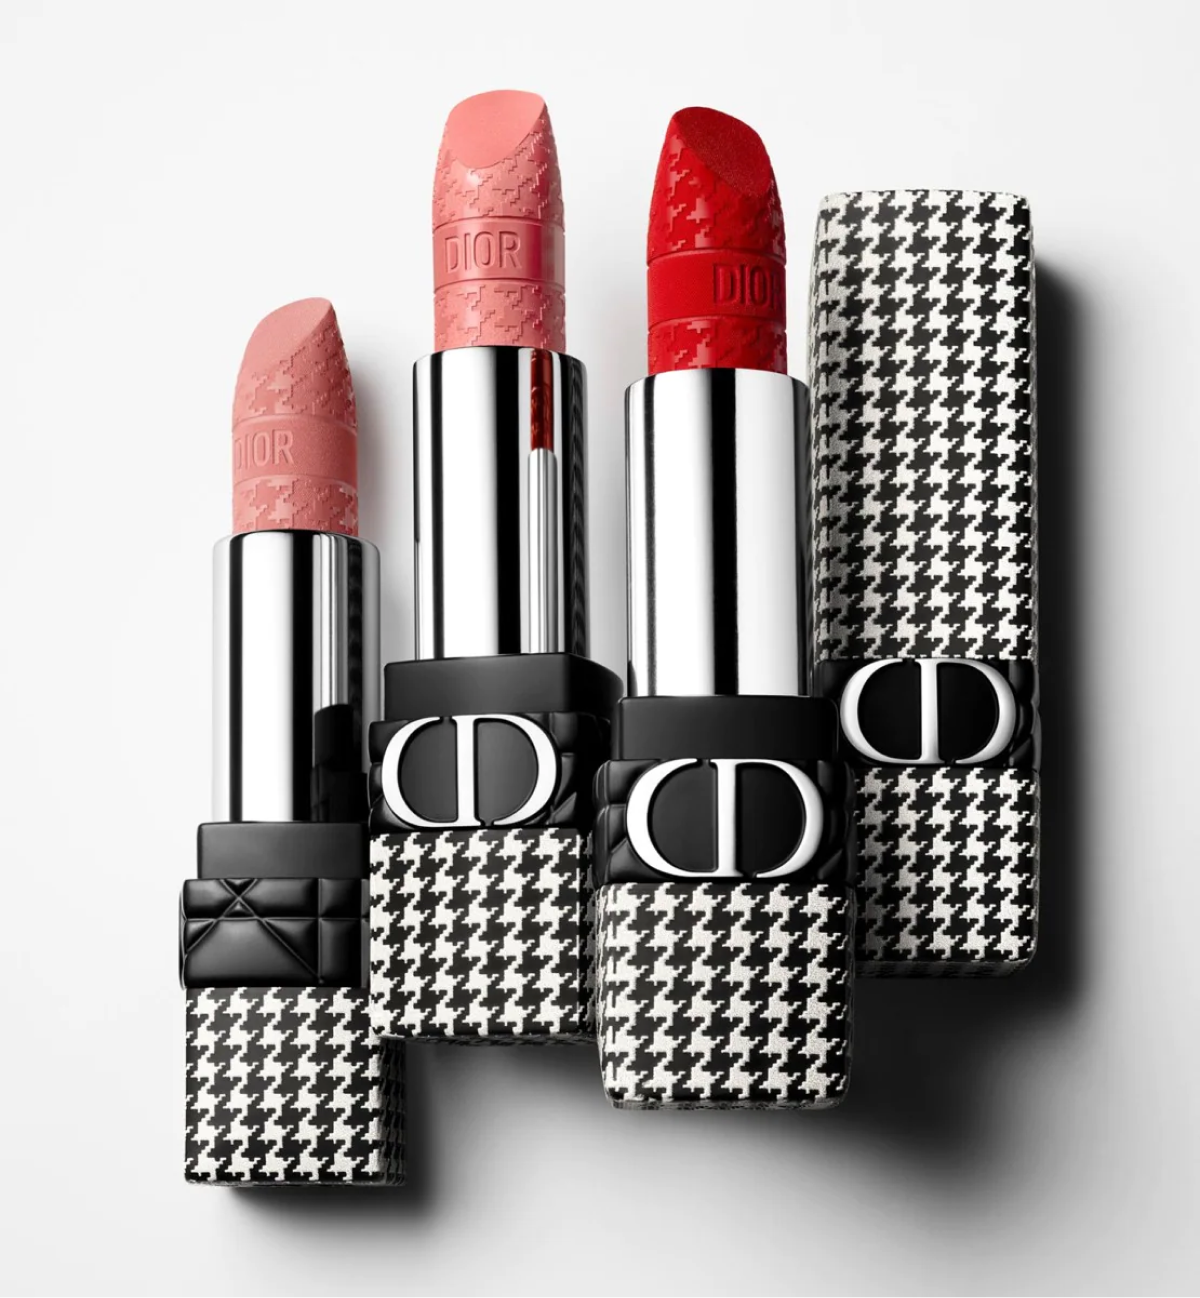 Dior представил новую коллекцию косметики и ароматов New Look (фото 8)